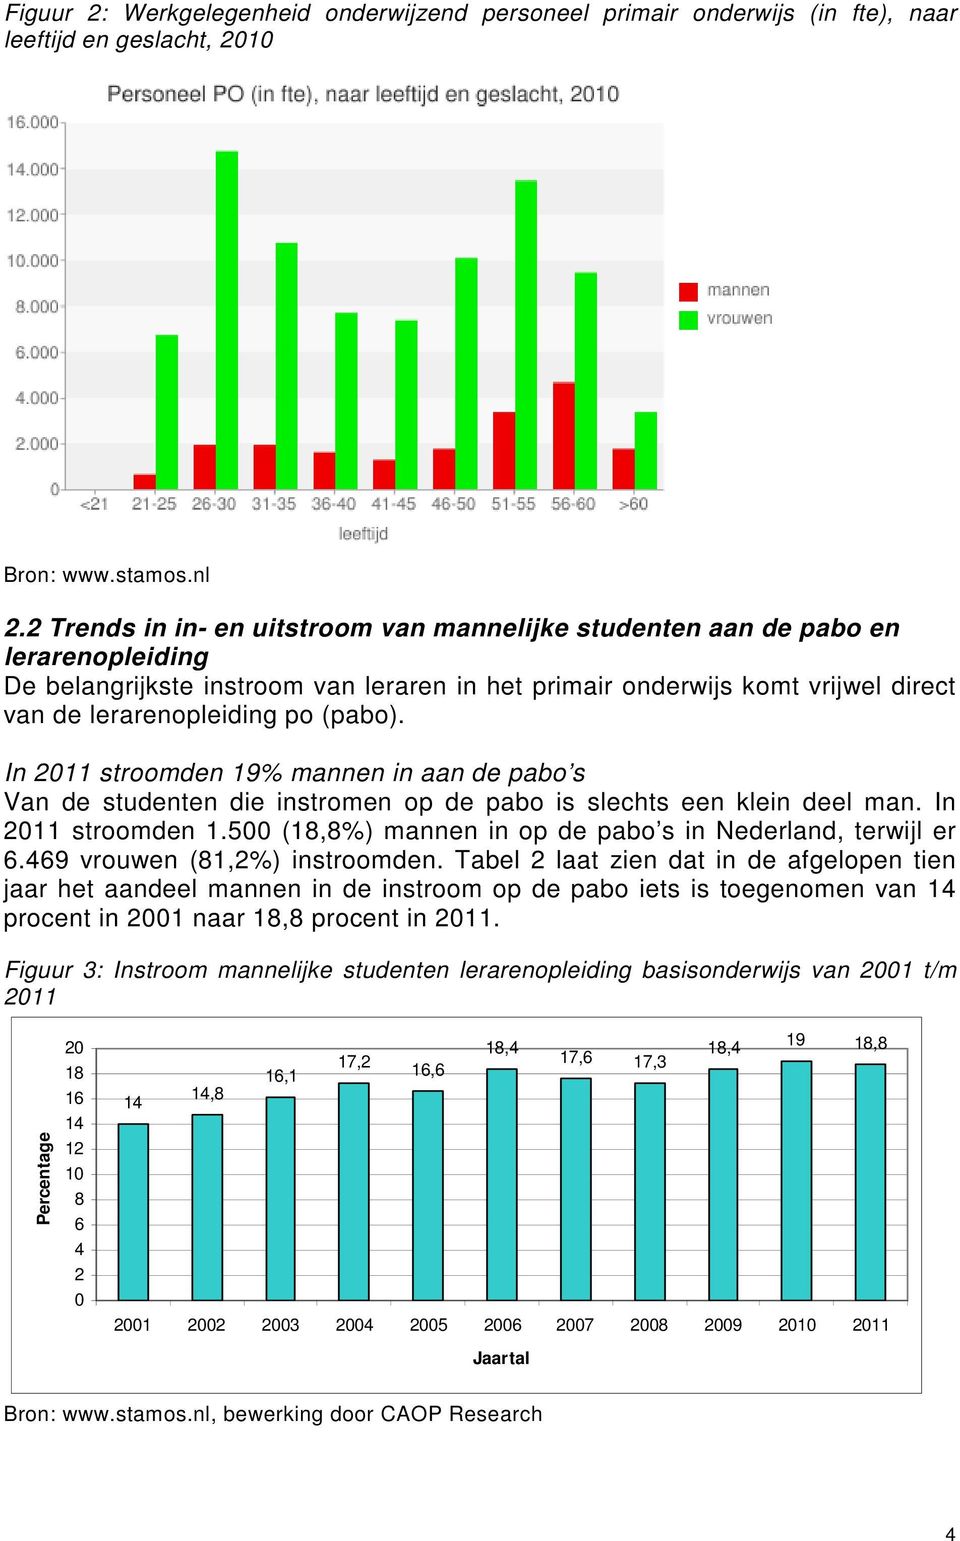 (pabo). In 2011 stroomden 19% mannen in aan de pabo s Van de studenten die instromen op de pabo is slechts een klein deel man. In 2011 stroomden 1.500 (18,8%) mannen in op de pabo s in Nederland, terwijl er 6.